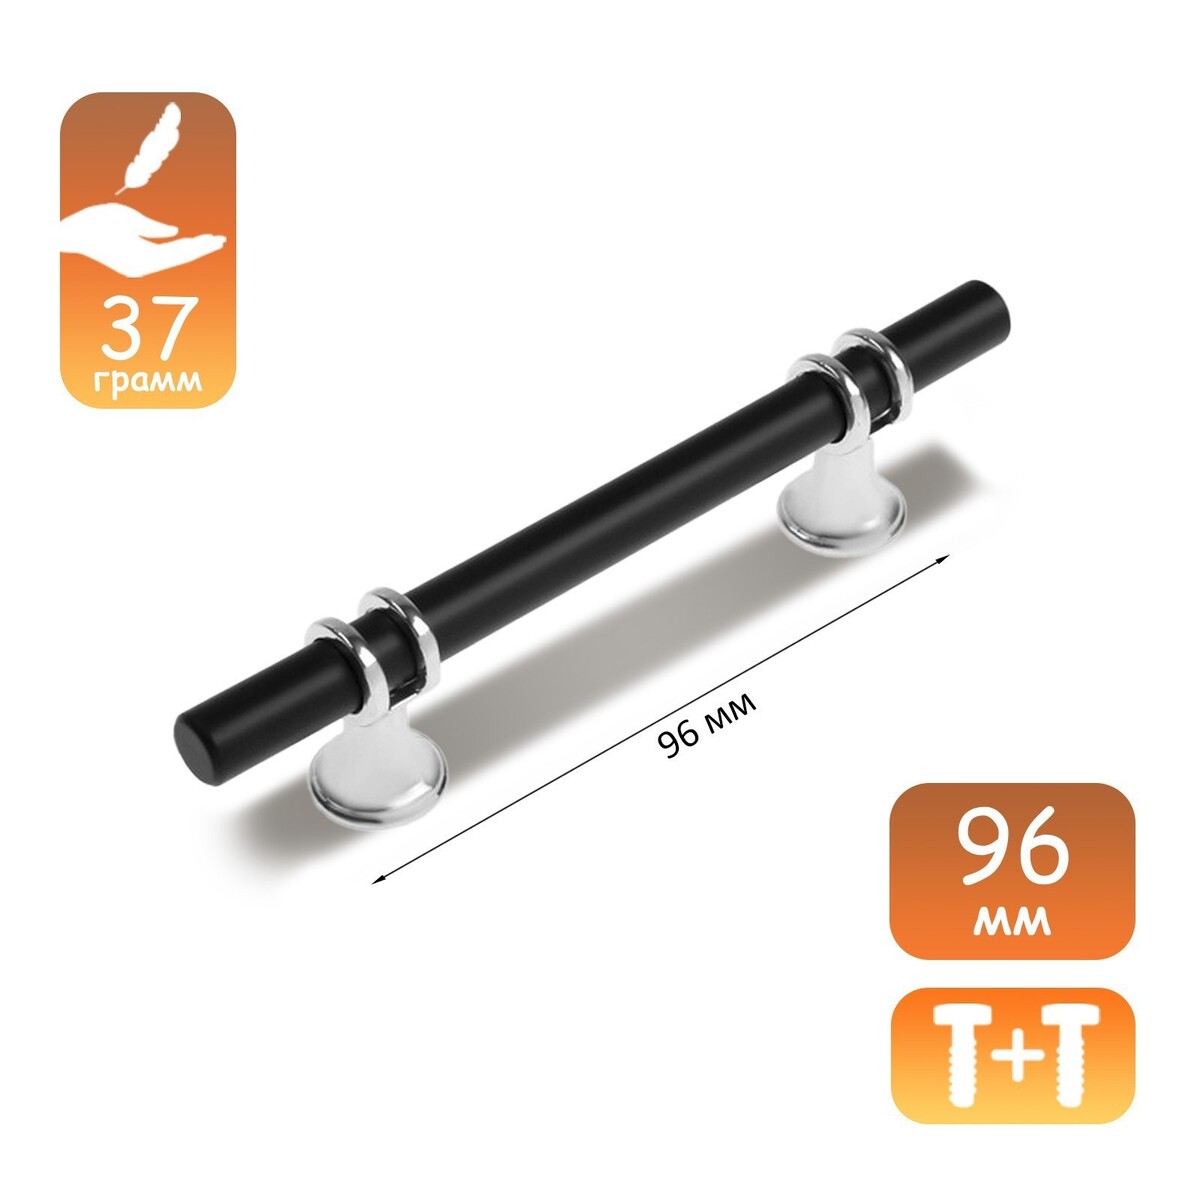 Ручка скоба cappio, м/о 96 мм, d=12 mm, пластик, цвет хром/черный ручка скоба cappio м о 128 мм d 12 mm пластик хром